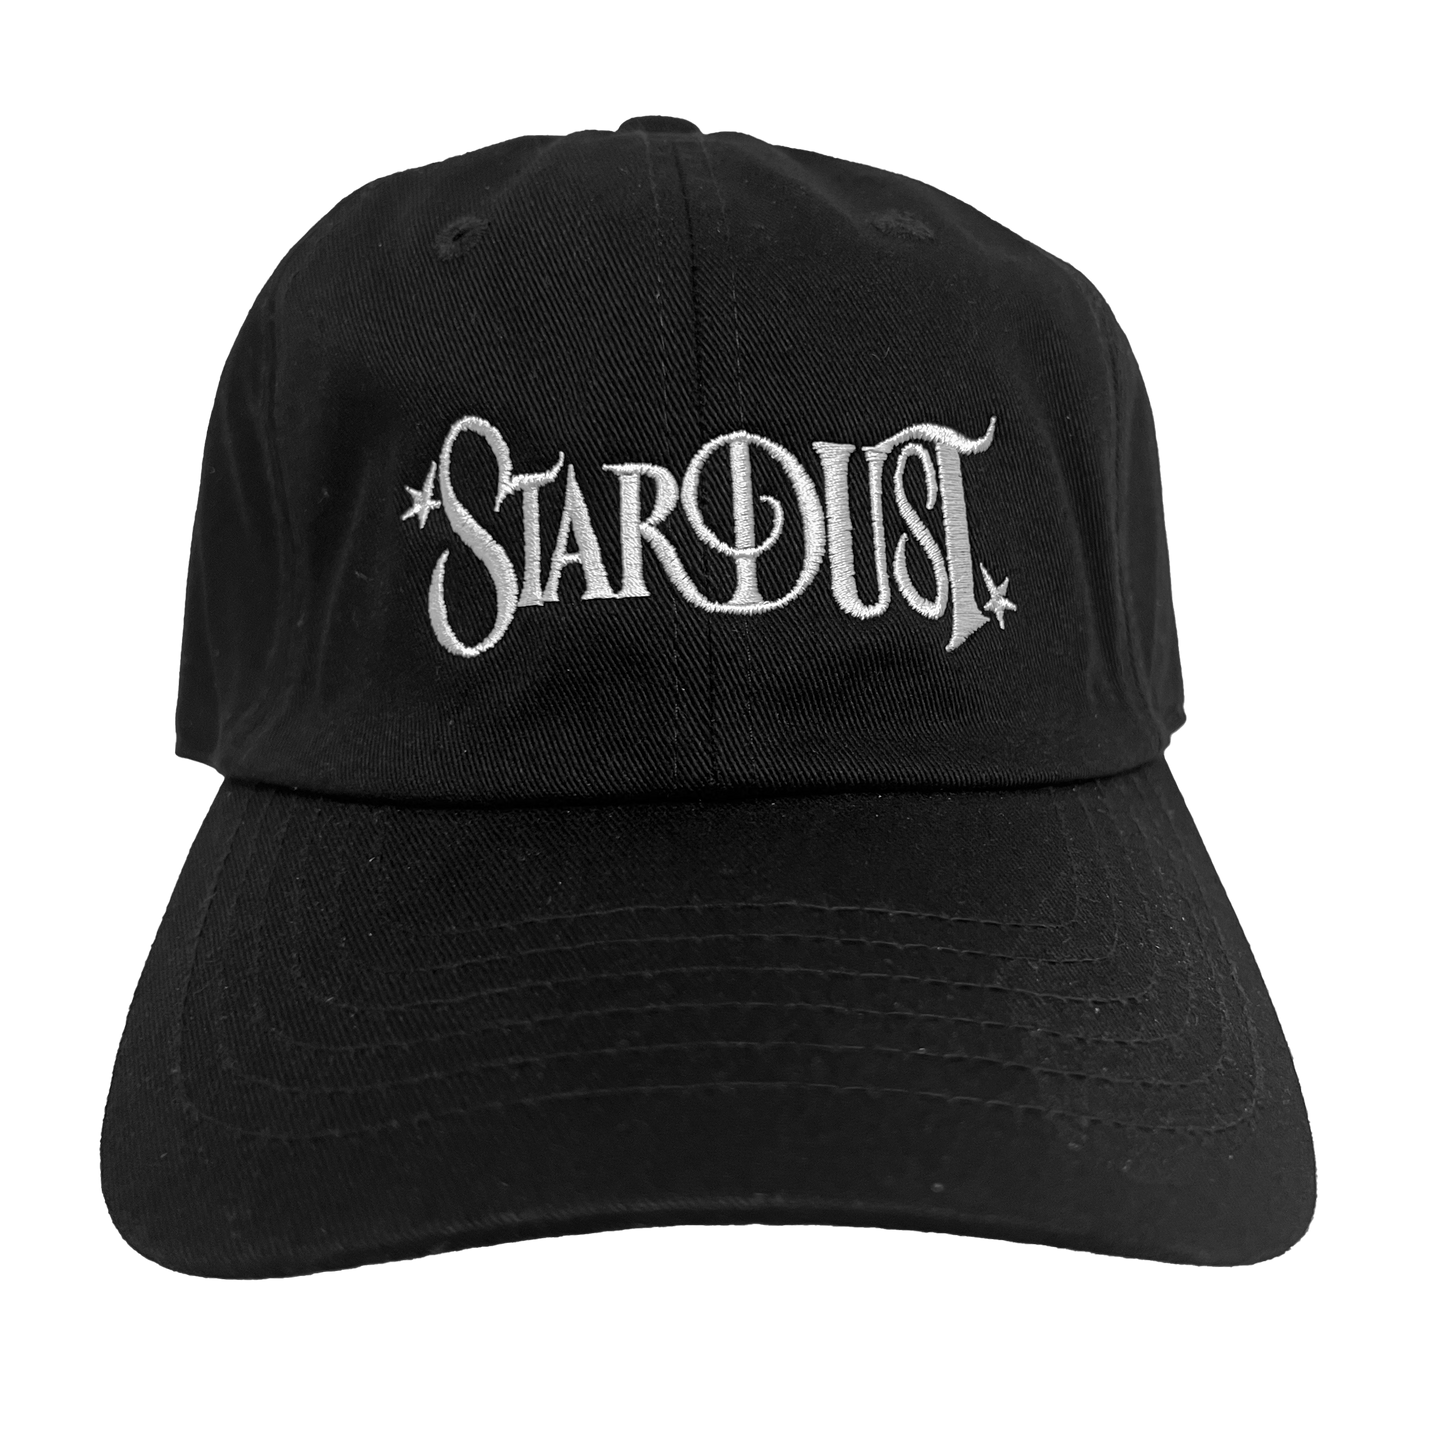 Stardust Wanderlust II Dad Hat 004 Black / White